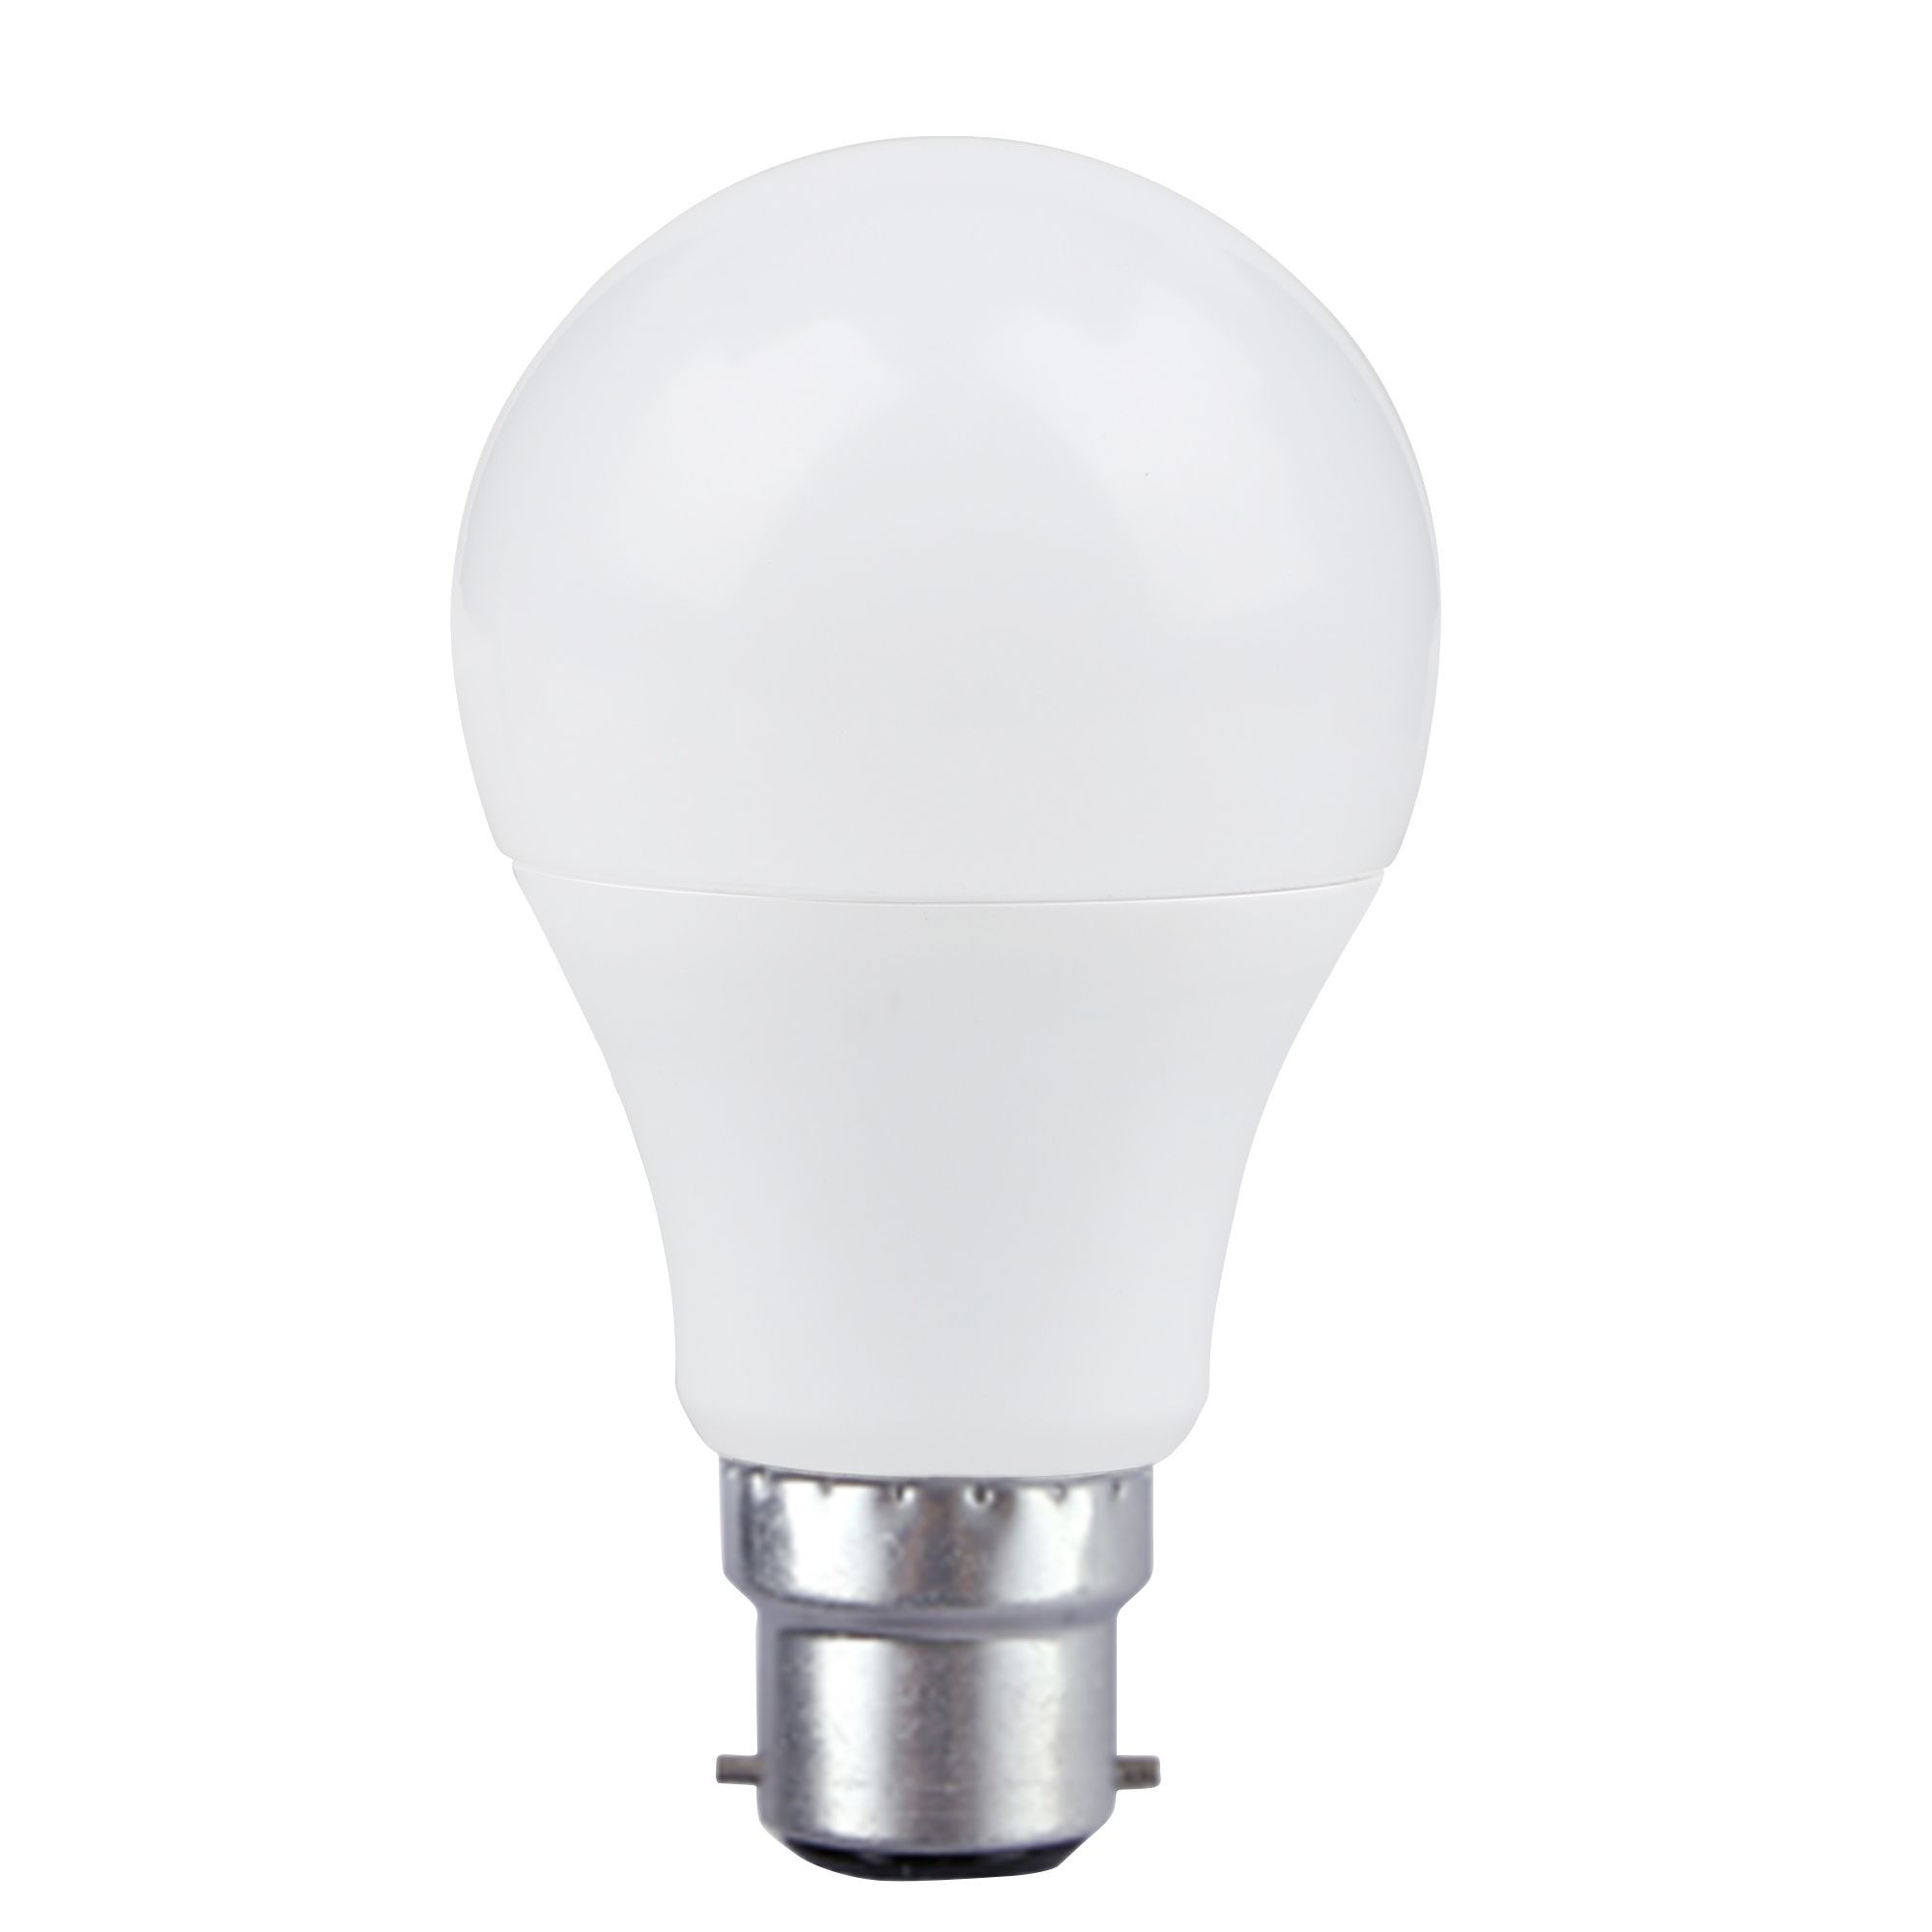 Diall B22 LED Light bulb